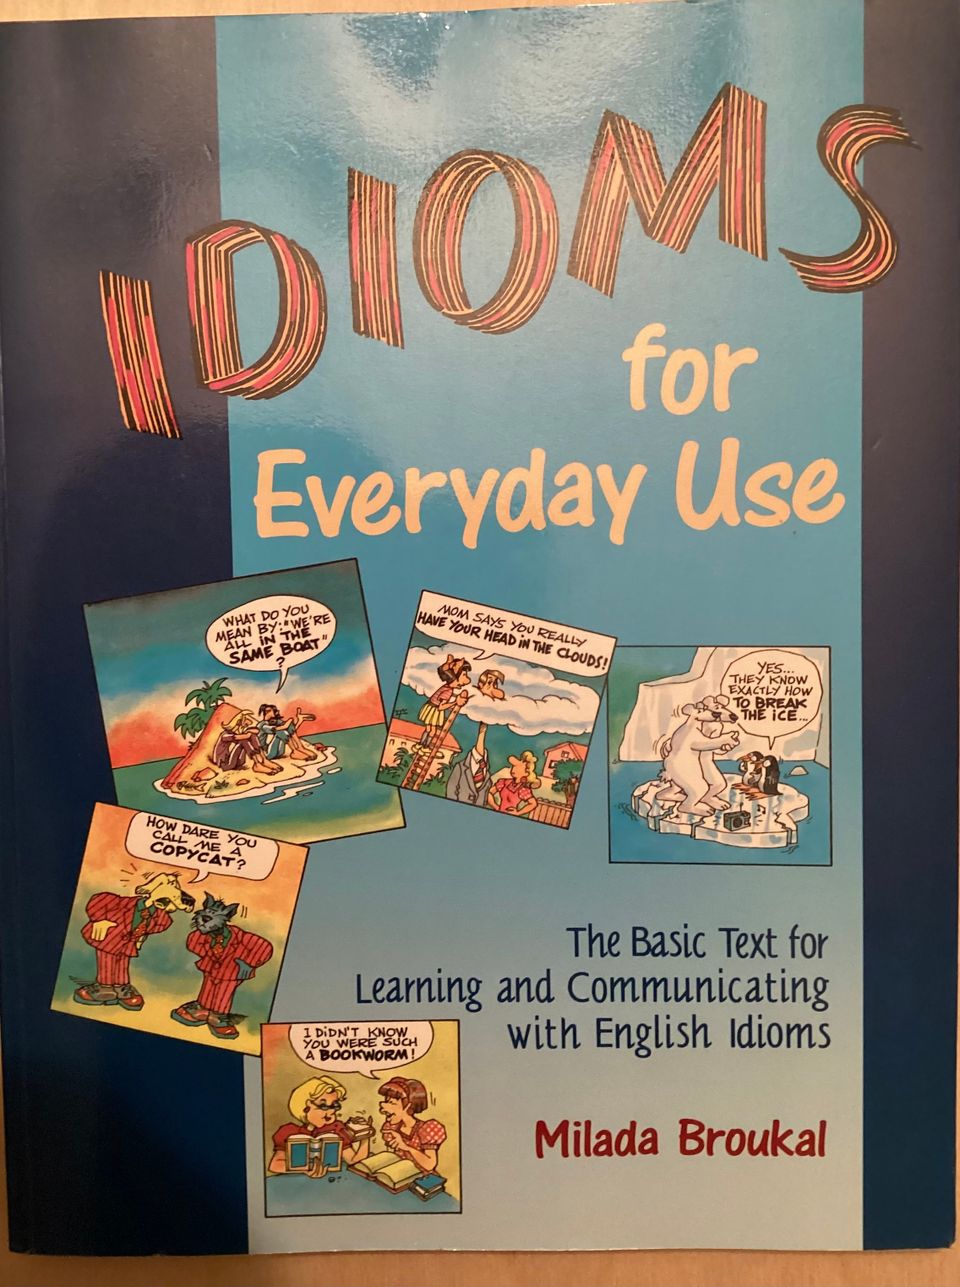 Idioms for Everyday Use - englanninkielen sanontoja